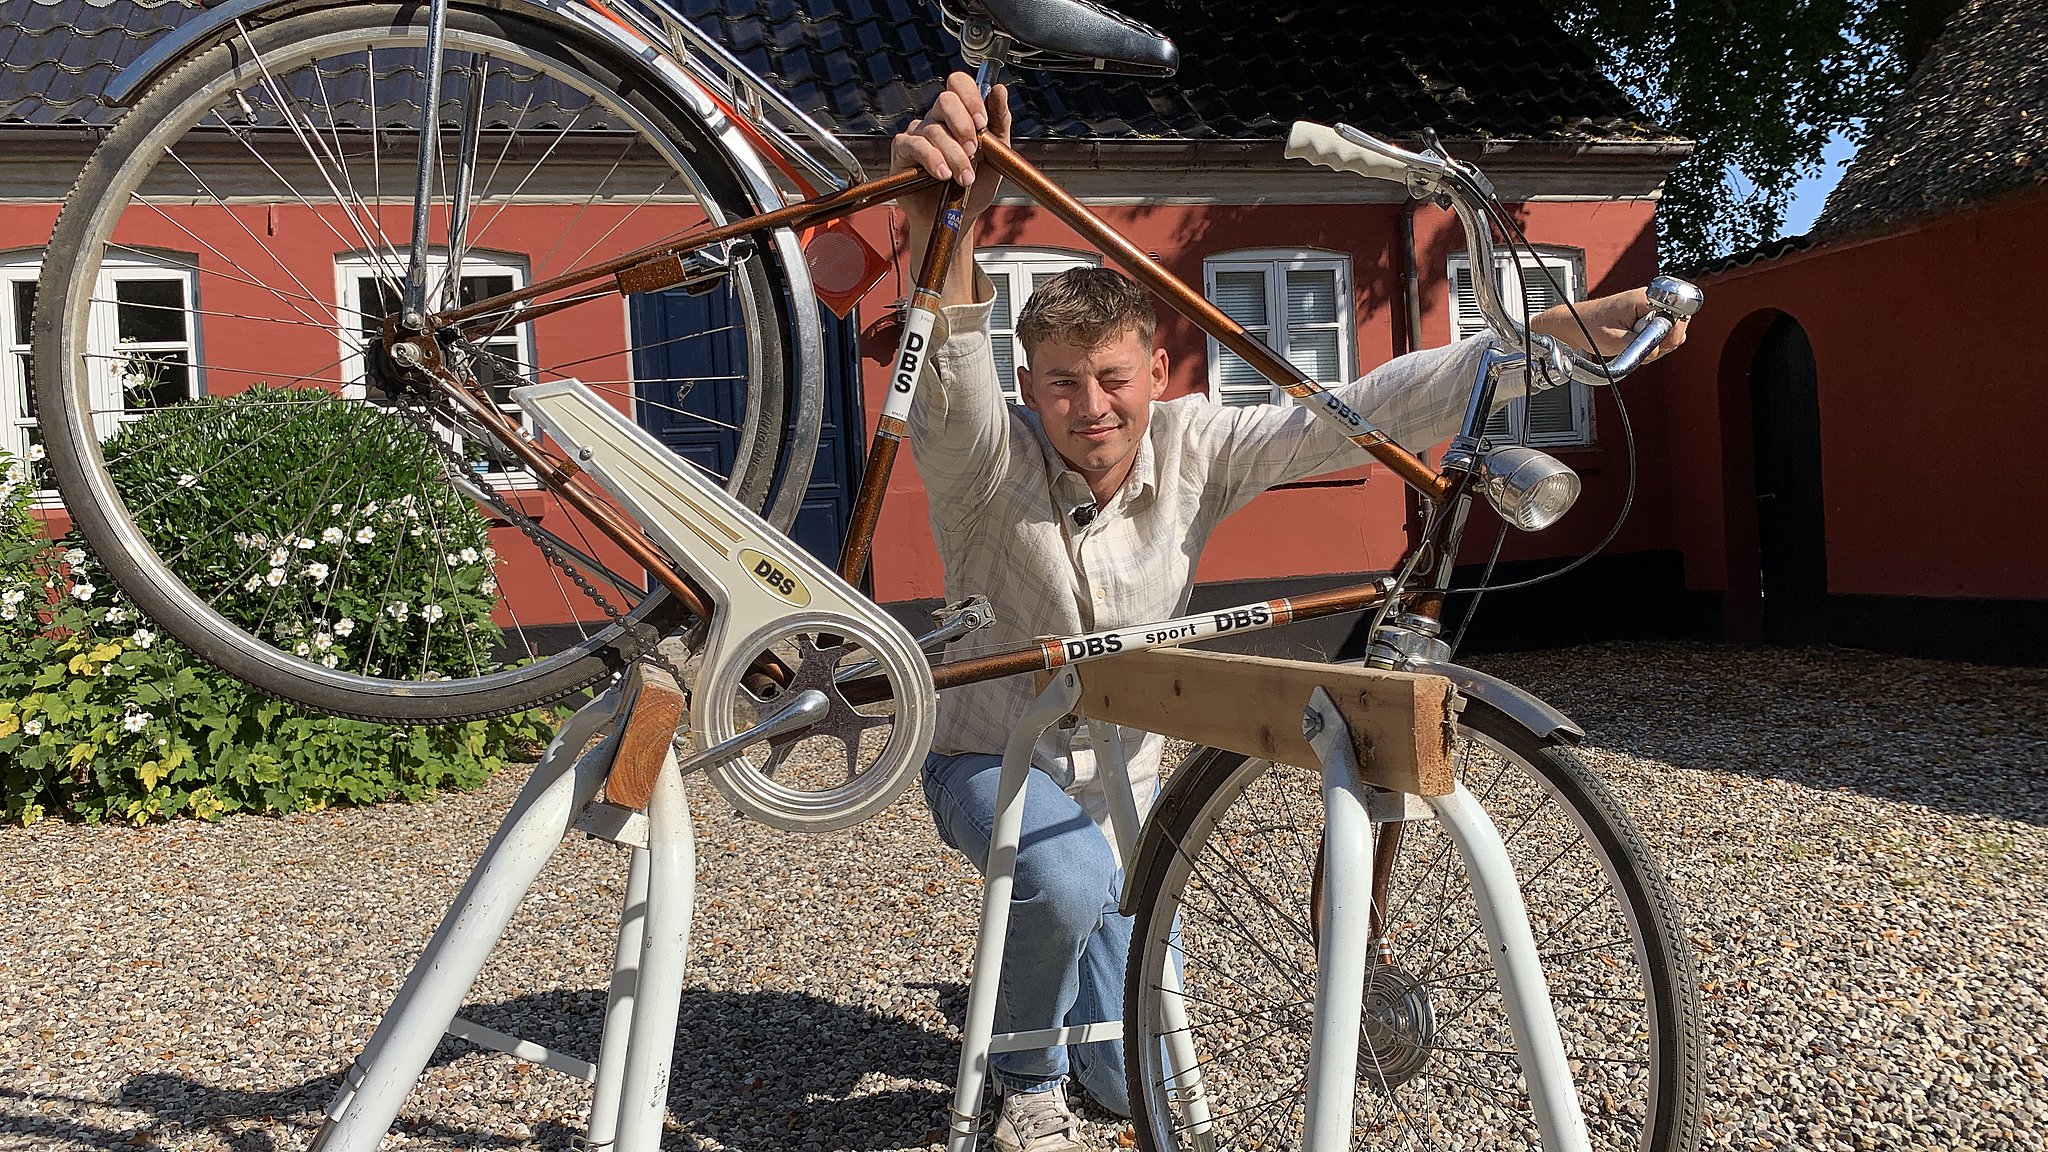 gamle cykler nyt liv og donerer til trængte familier: Jeg kan leve højt på taknemligheden i flere måneder | TV SYD